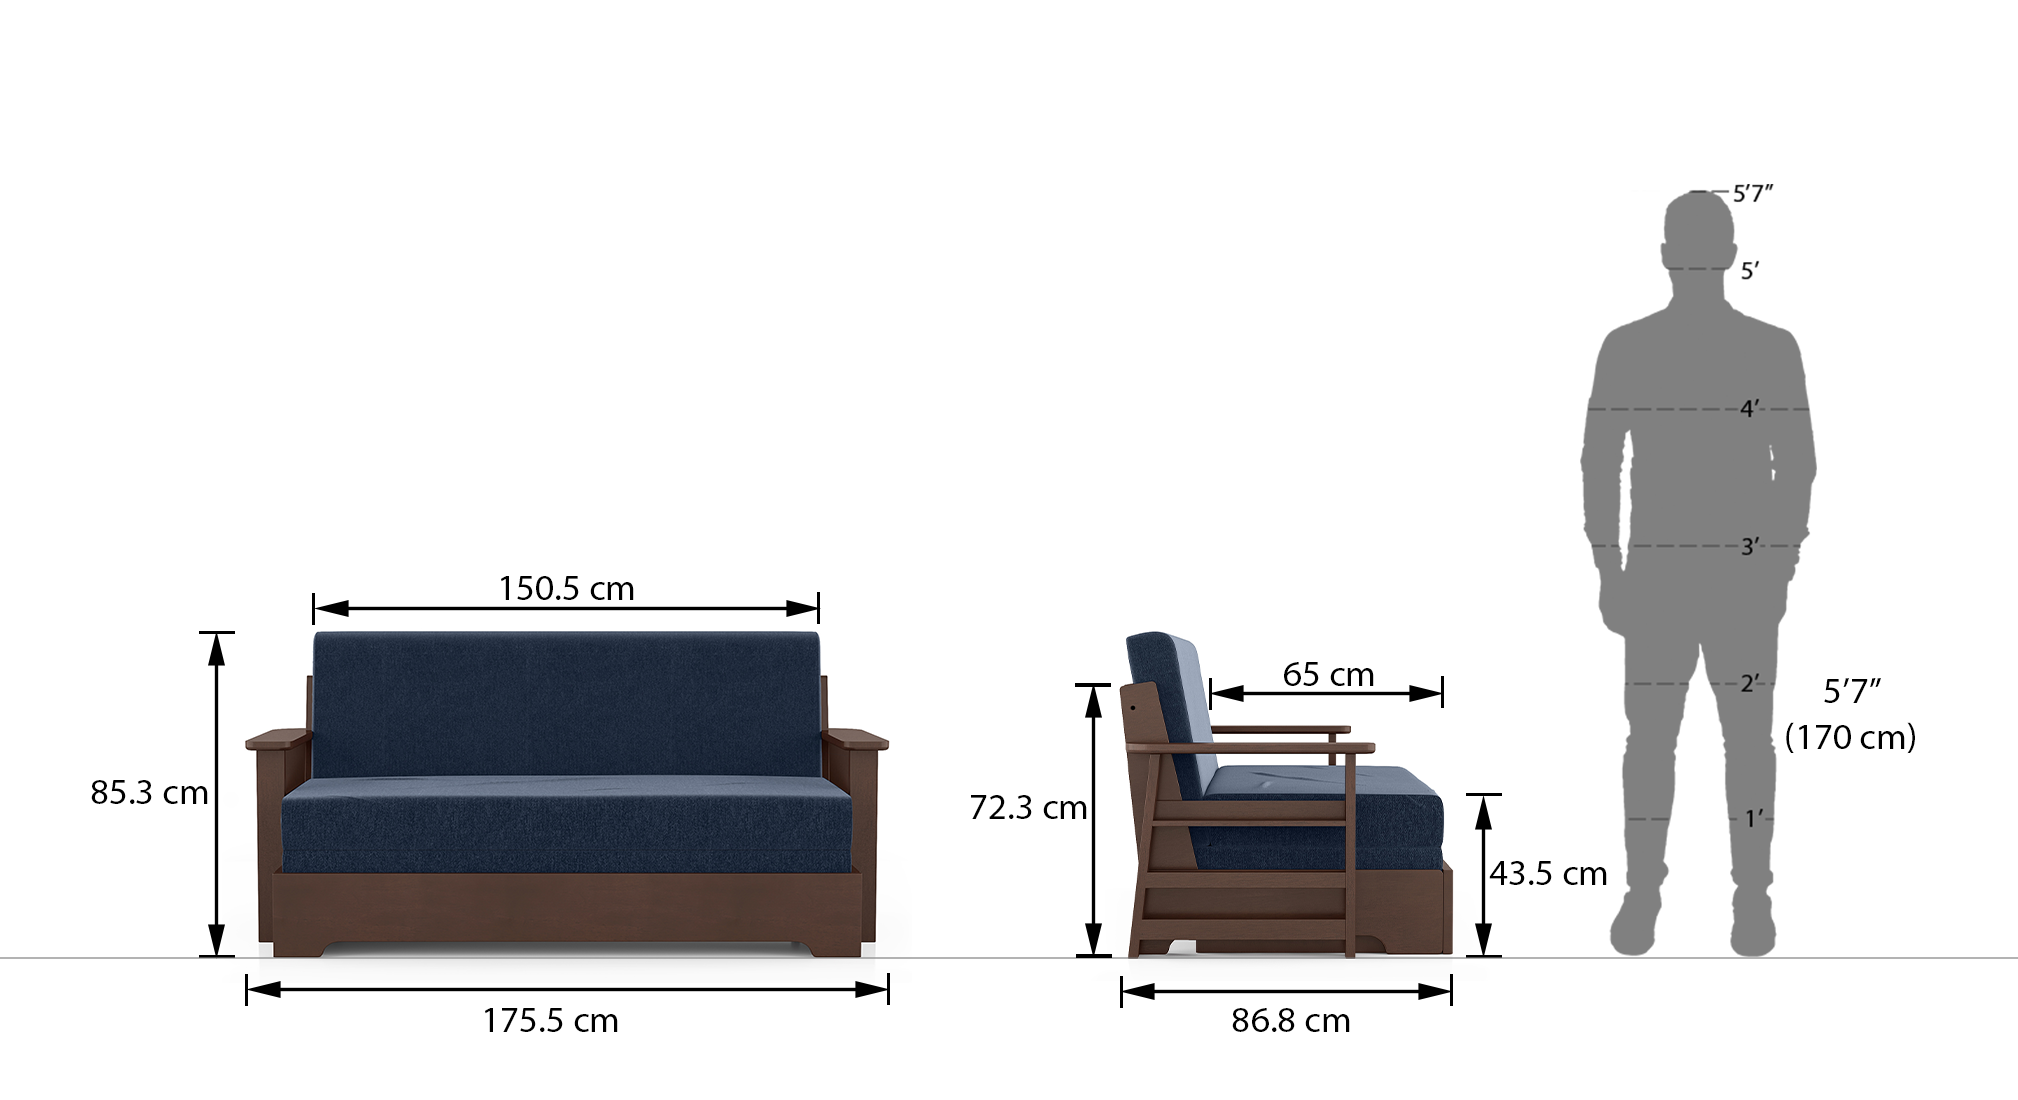 Oshiwara sofa cum bedi